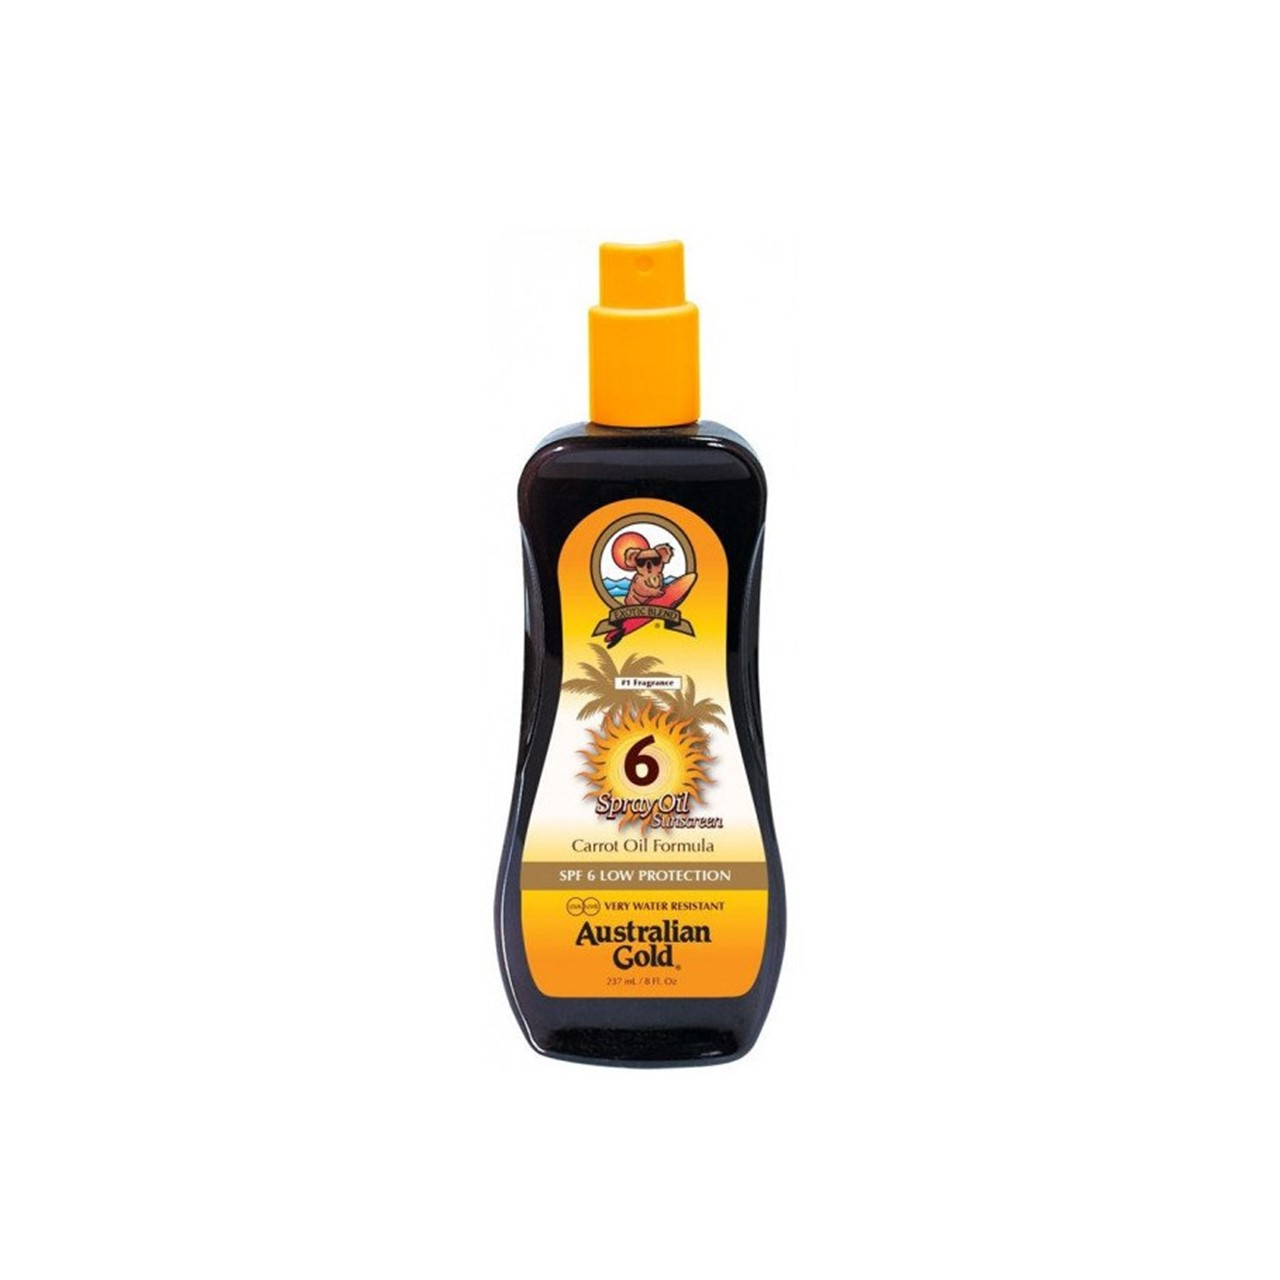 Australian Gold Spray Oil Sunscreen Carrot Oil Formula SPF6 237ml (8.01fl oz)